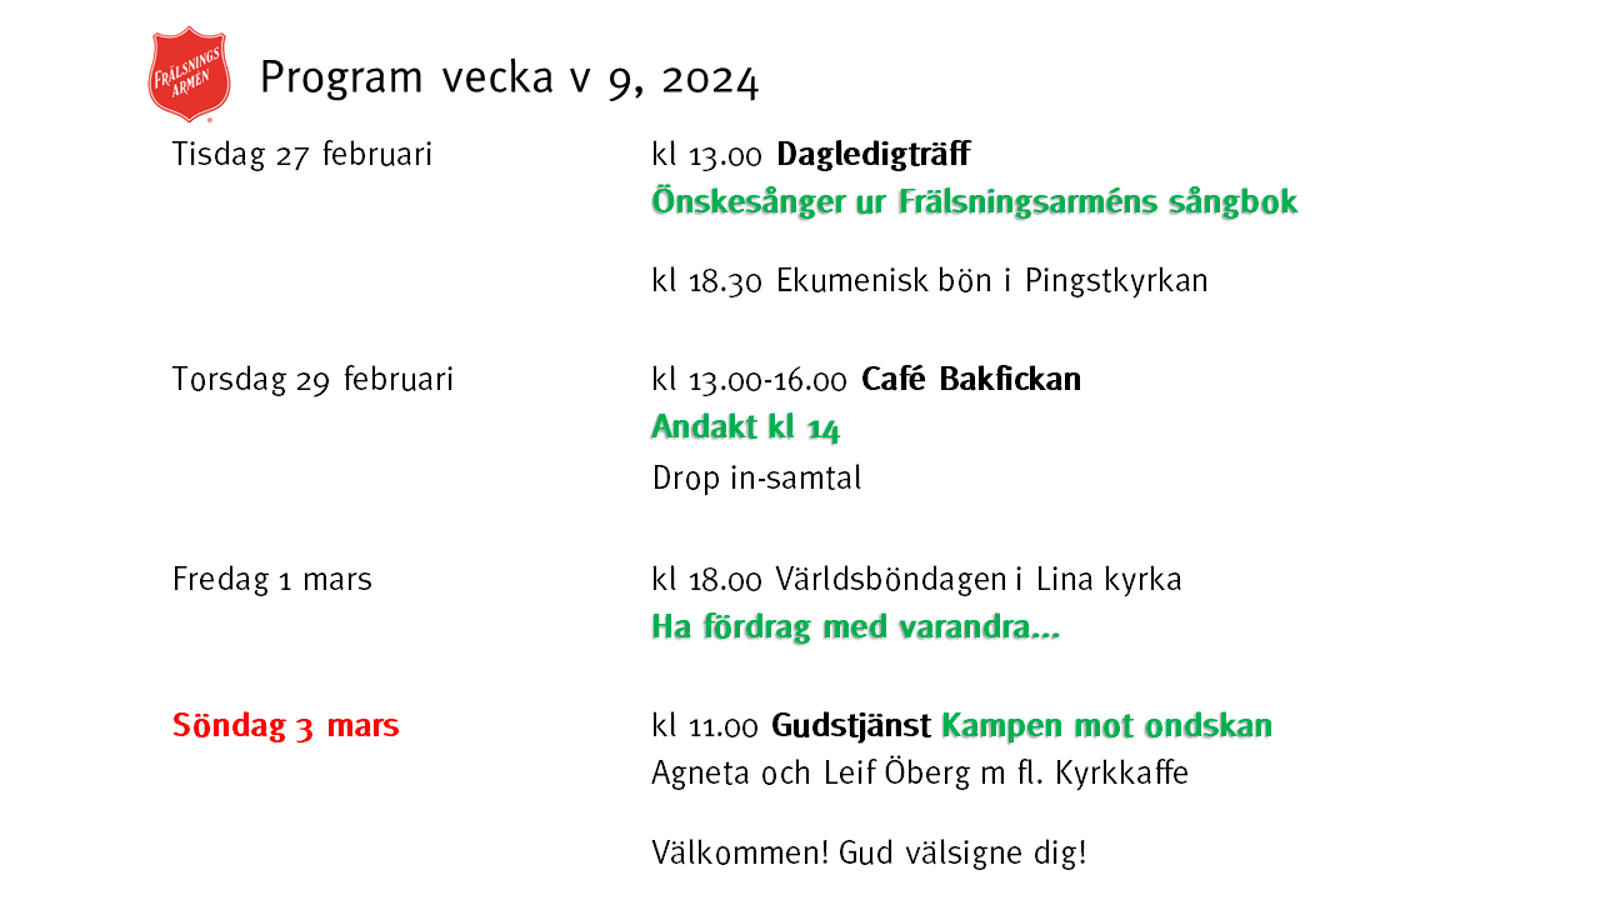 Program v 9, 2024